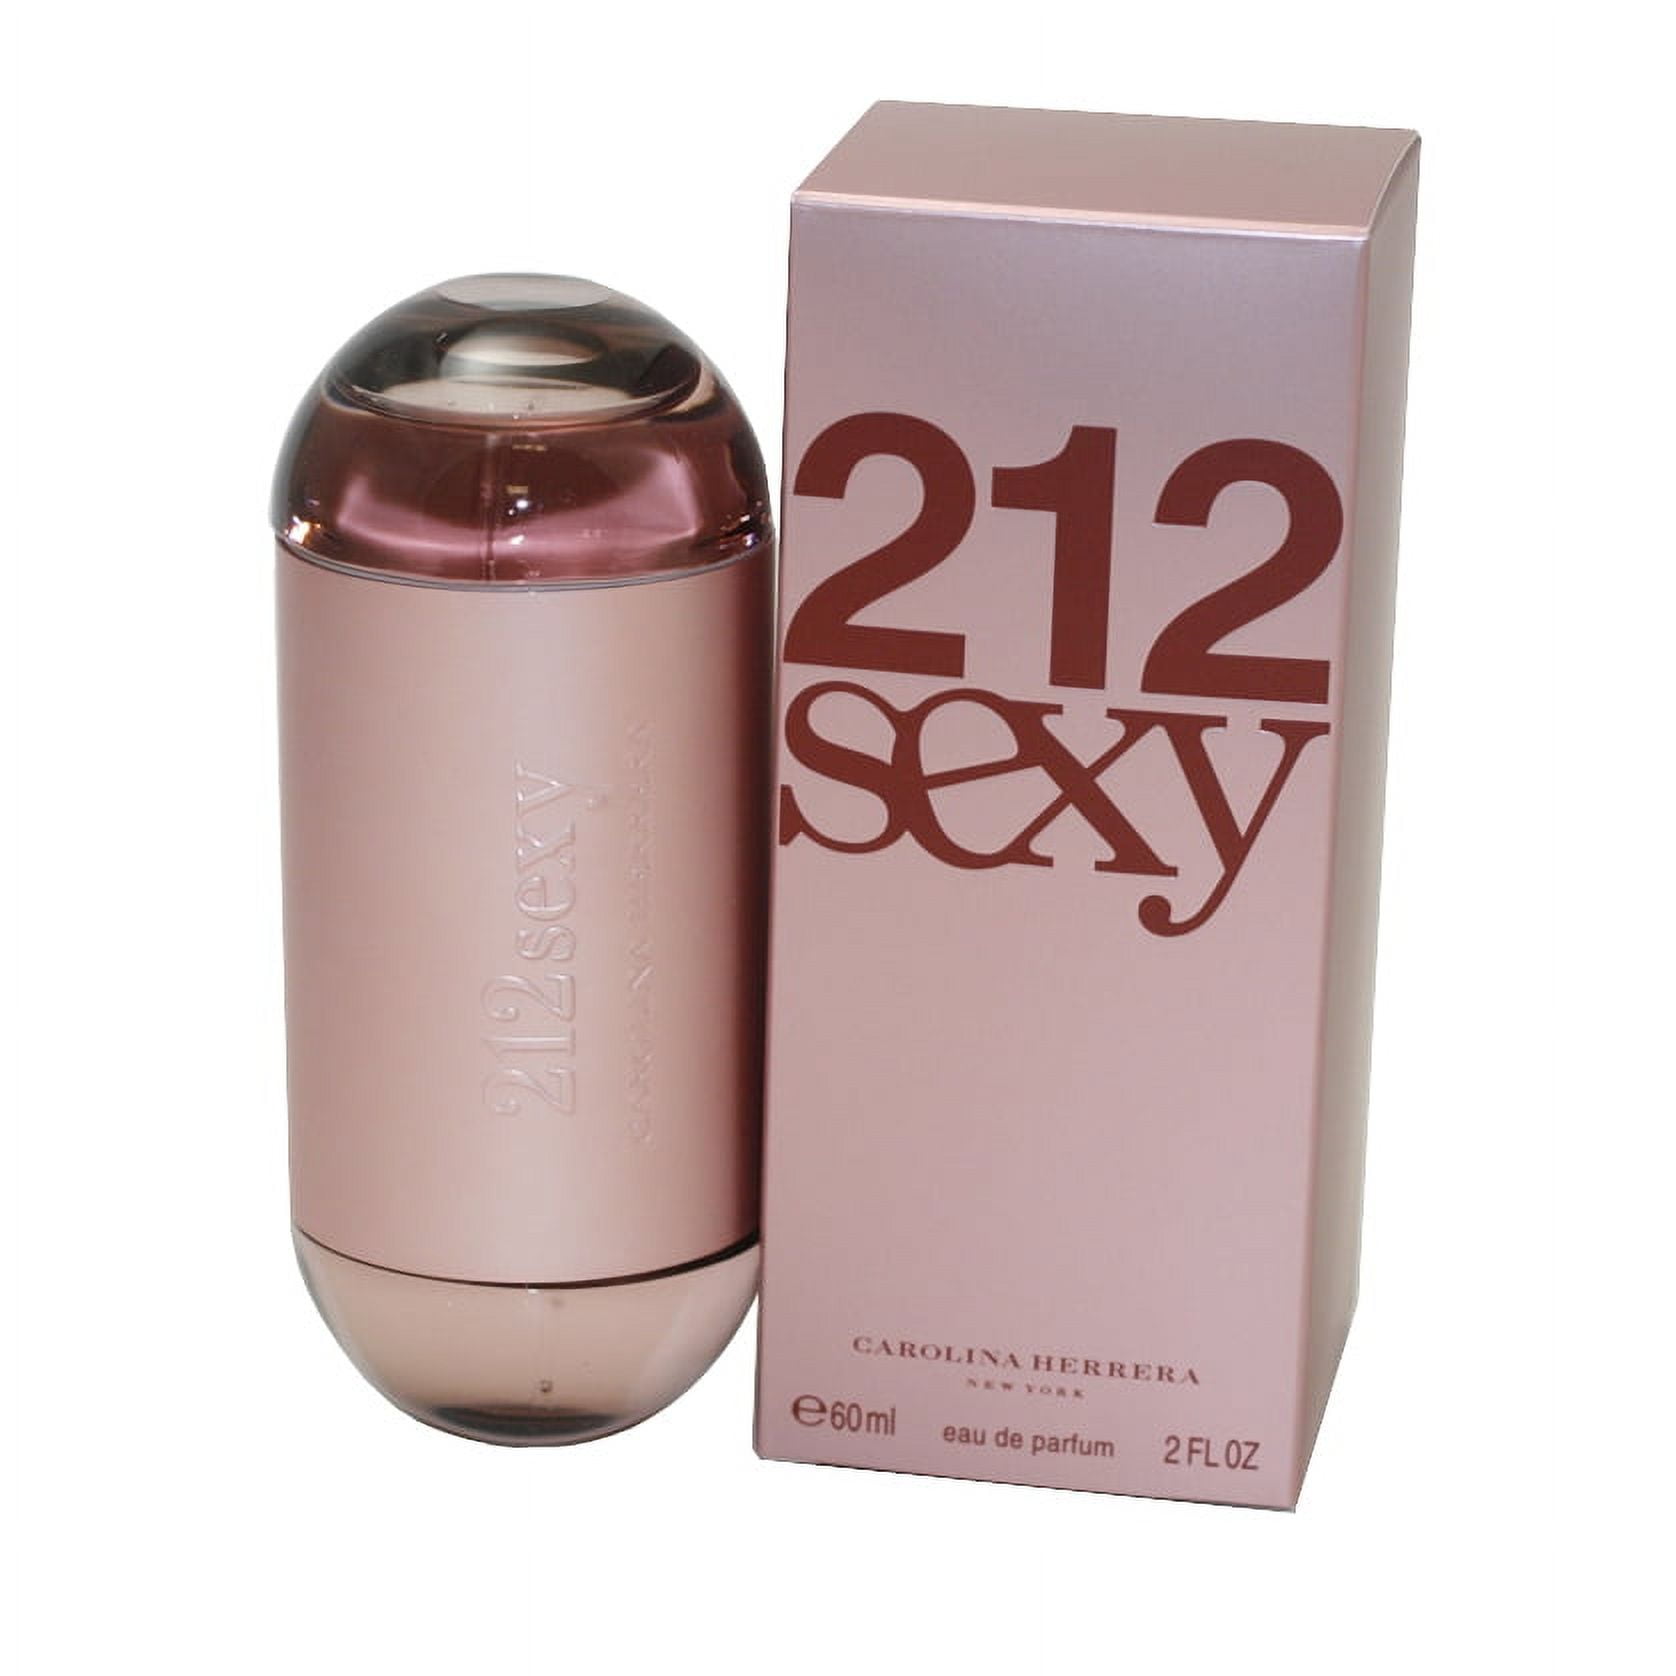 Carolina Herrera 212 Sexy Eau de Parfum Natural Spray - 2 fl oz